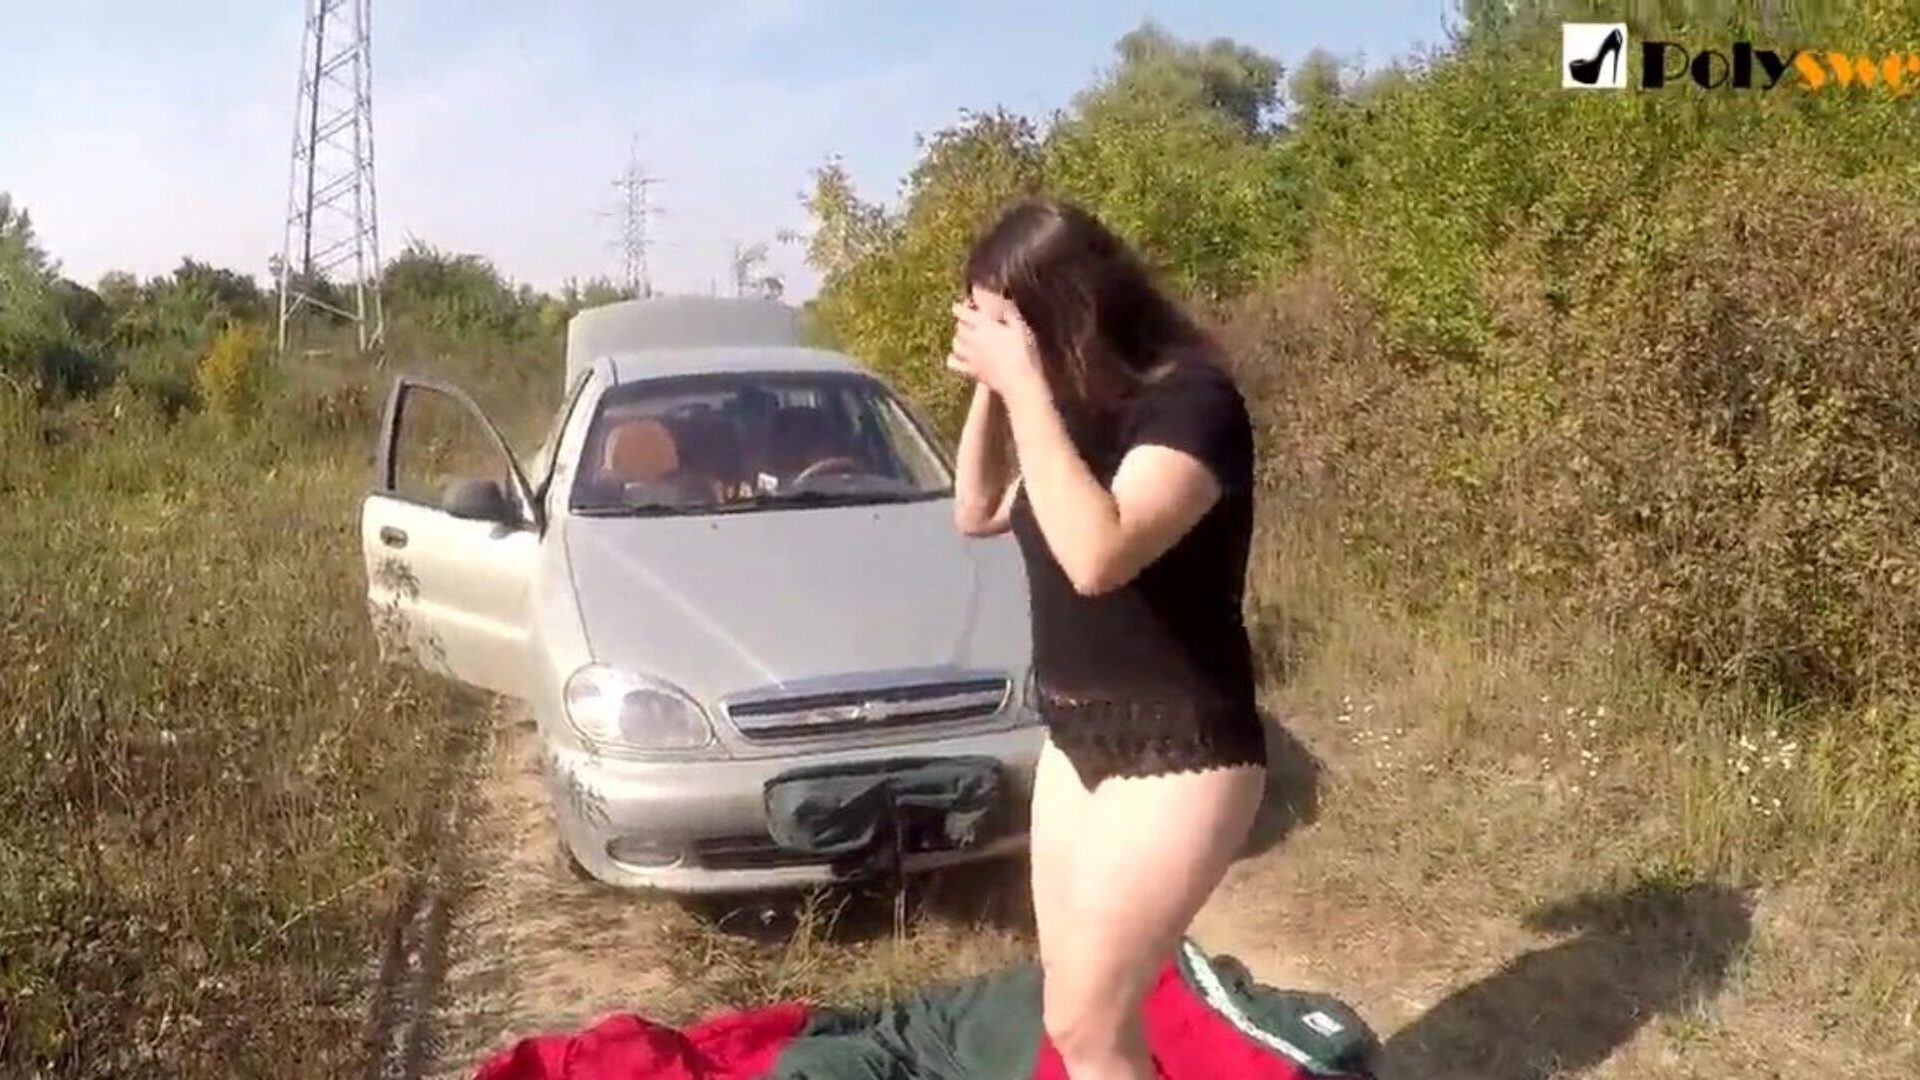 offentlig onani flicka jag blev fångad av en bil i början av videon)